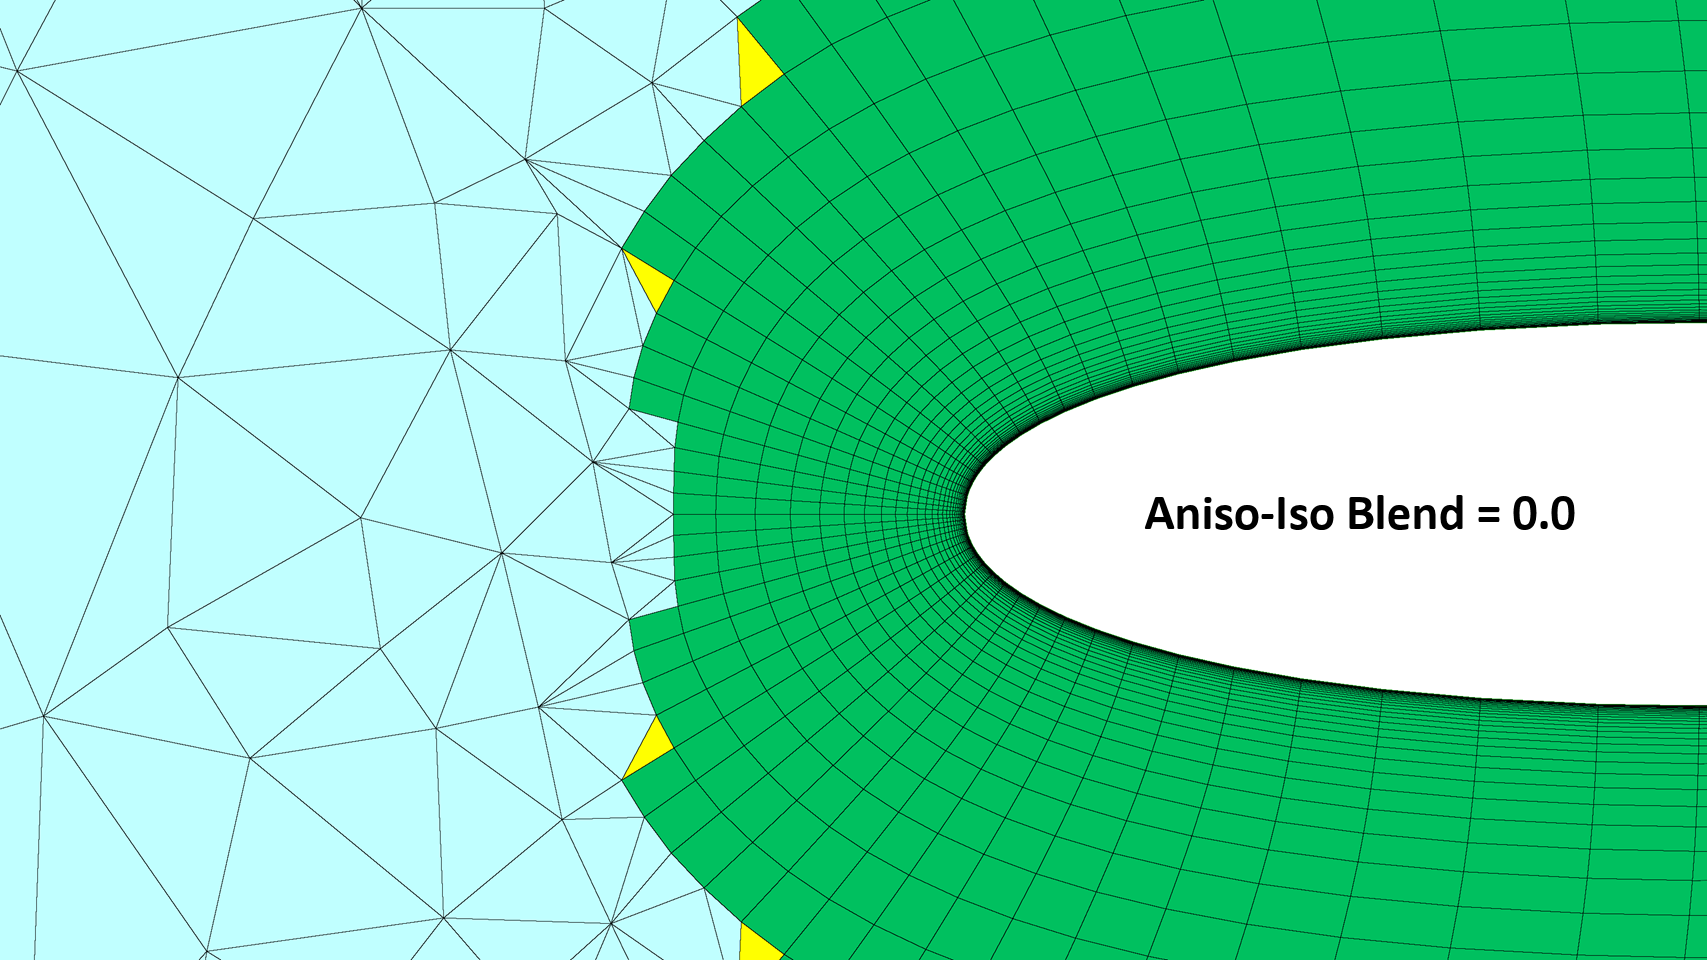 Aniso-Iso Blend = 0.0